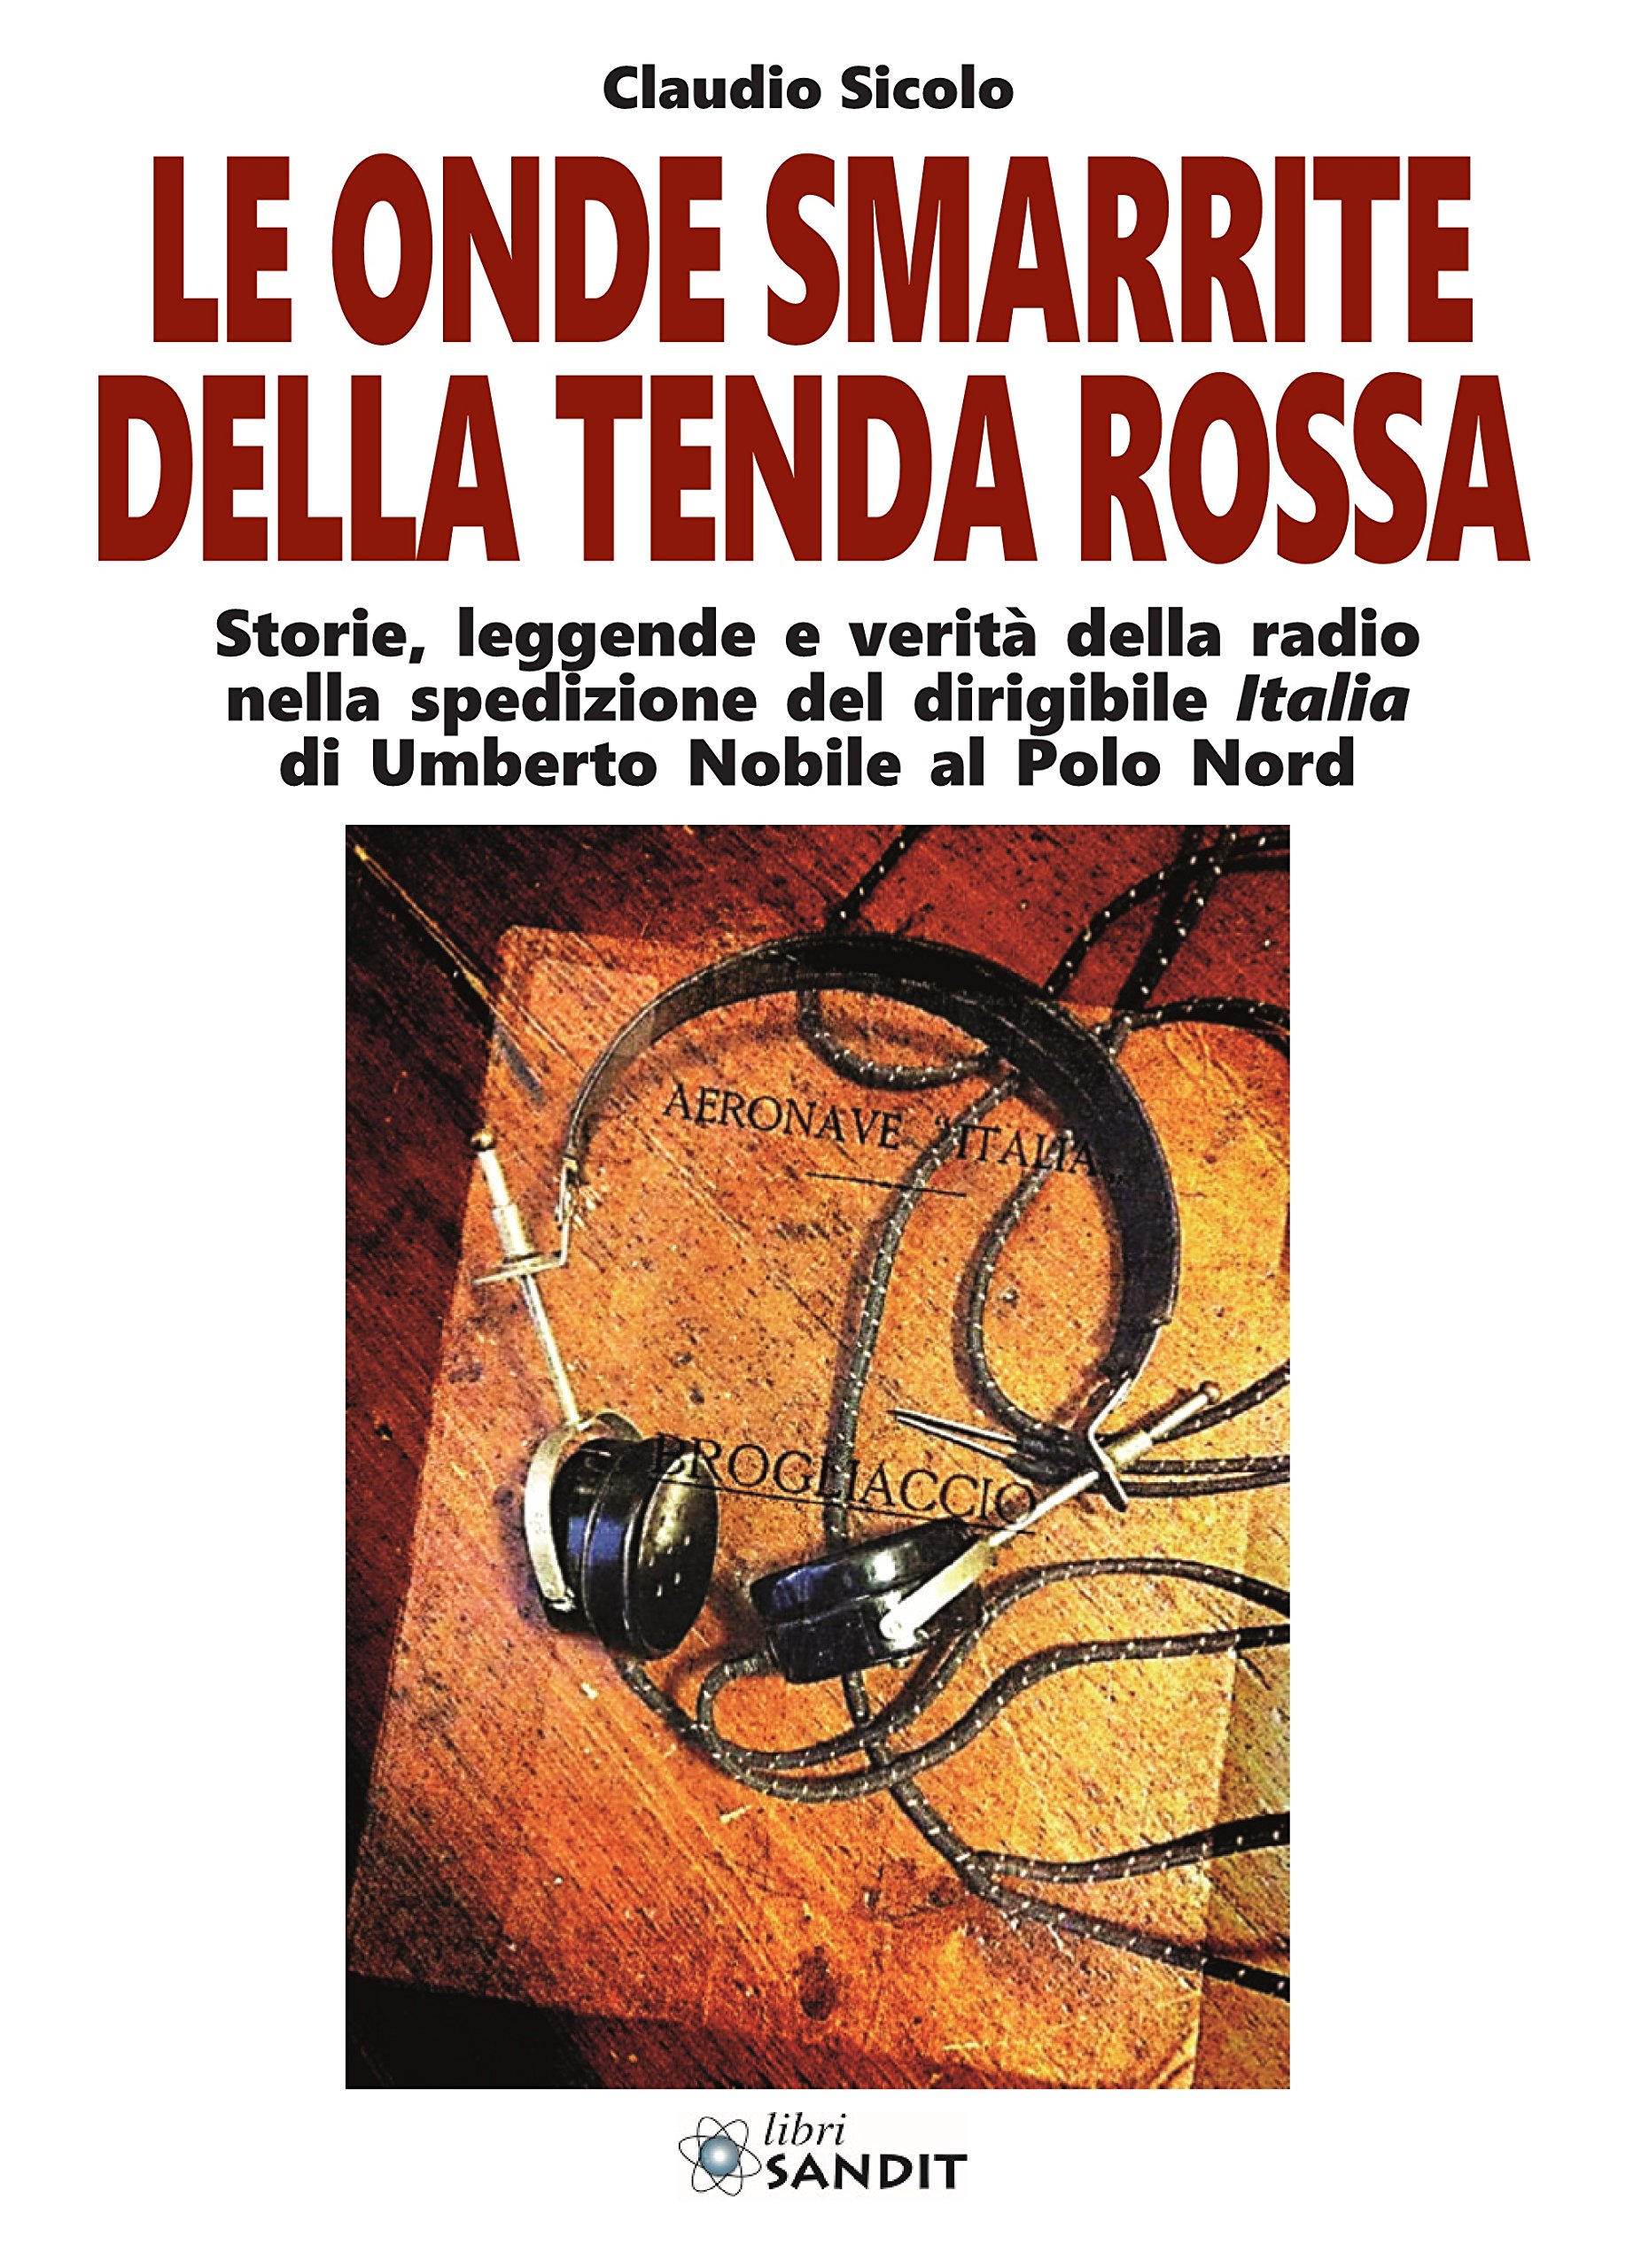 Libri Claudio Sicolo - Le Onde Smarrite Della Tenda Rossa NUOVO SIGILLATO, EDIZIONE DEL 31/10/2017 SUBITO DISPONIBILE